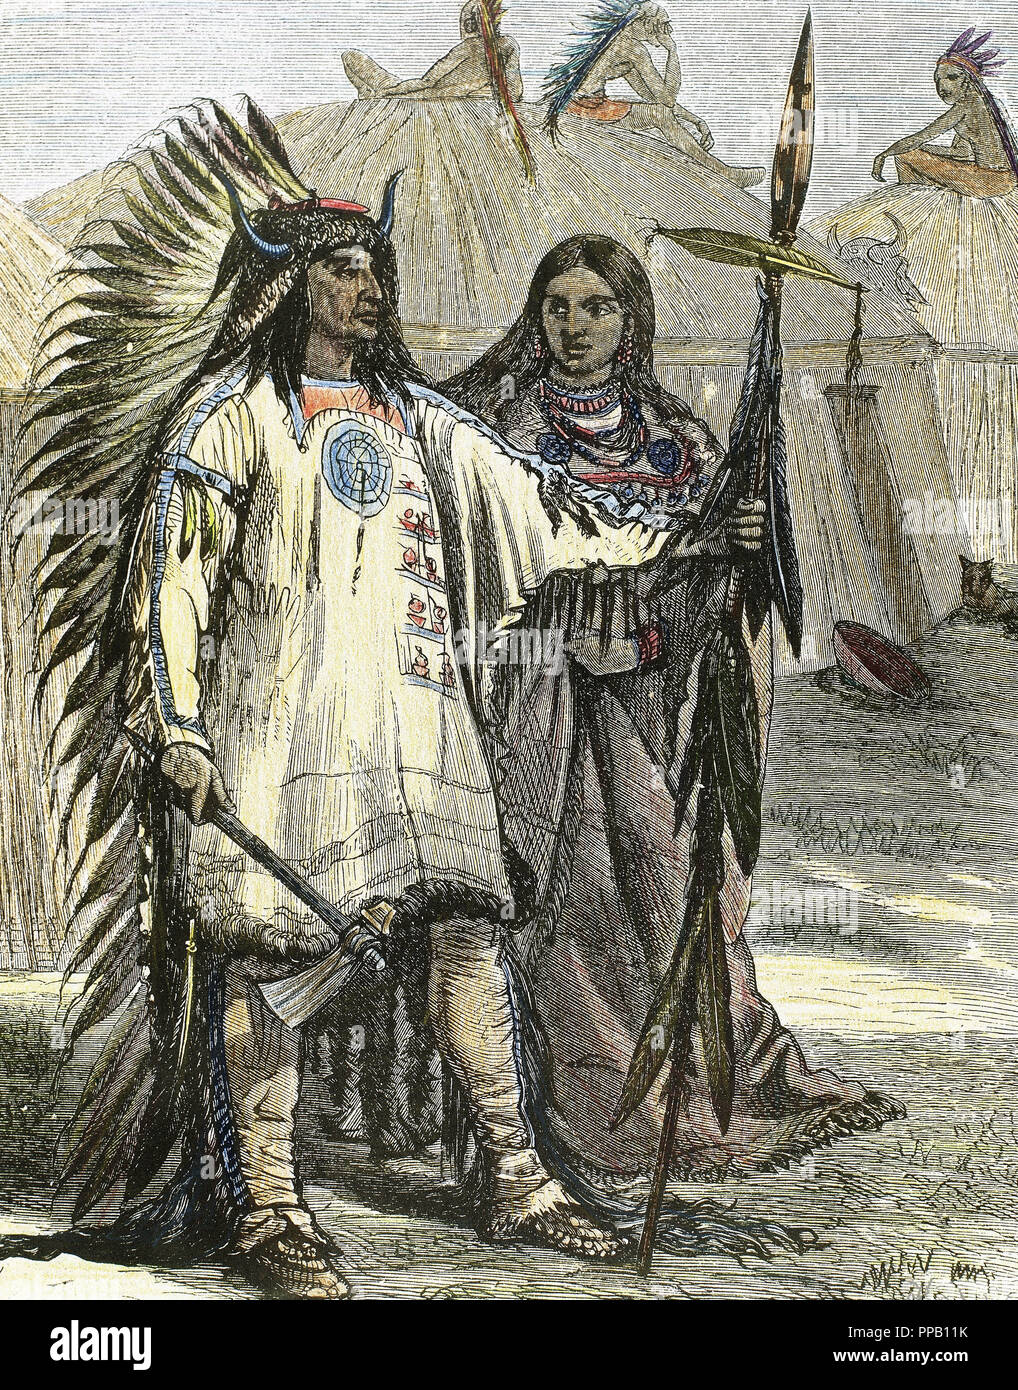 INDIOS DE AMERICA DEL NORTE. Grabado coloreado, año 1880. Stock Photo